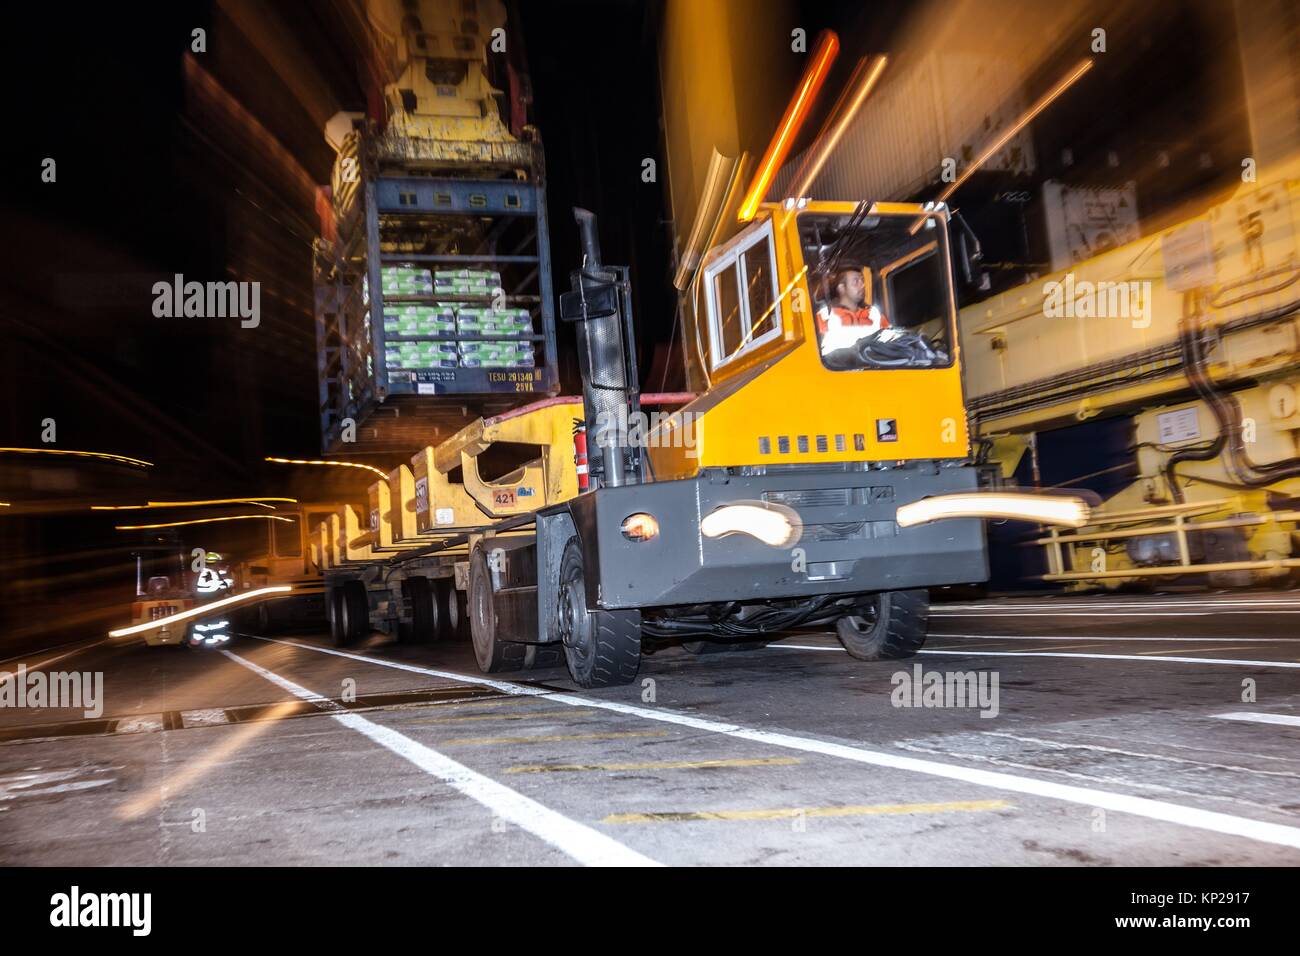 Camión de carga amarillo fijo está cargado con un contenedor azul de mercancías en Santa Cruz de Tenerife muelle en la noche Foto de stock